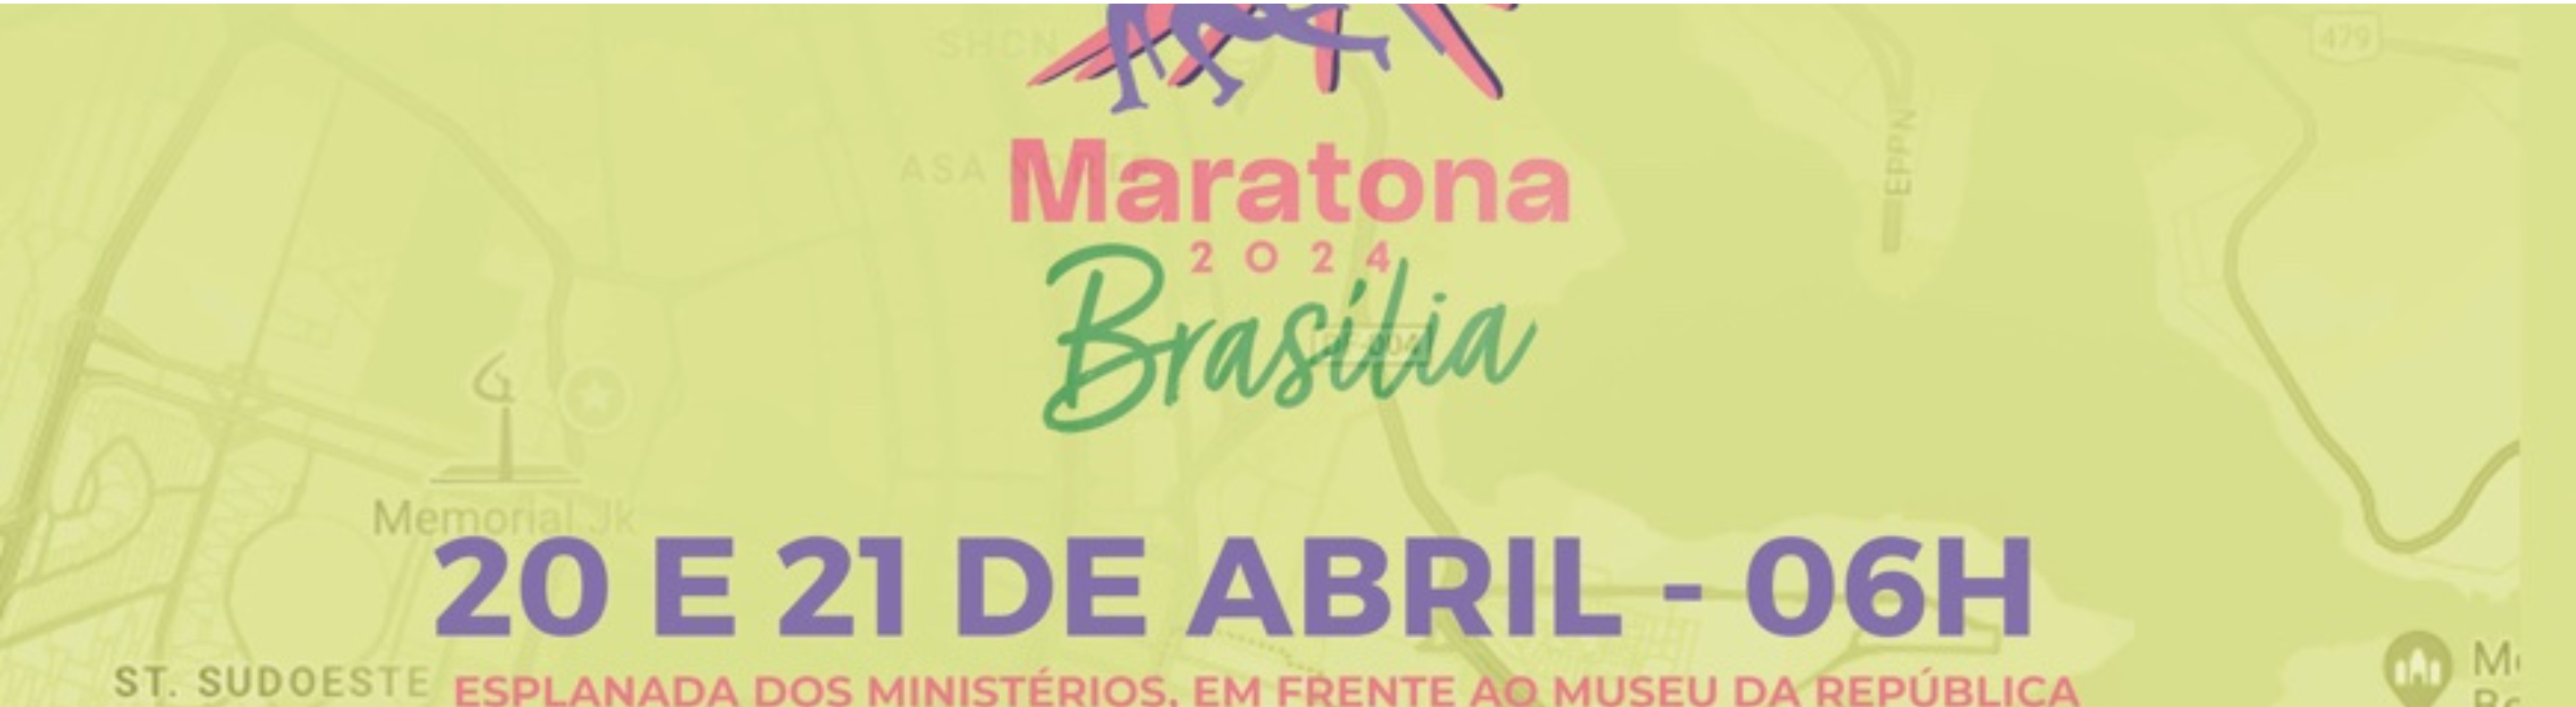 Maratona Brasília